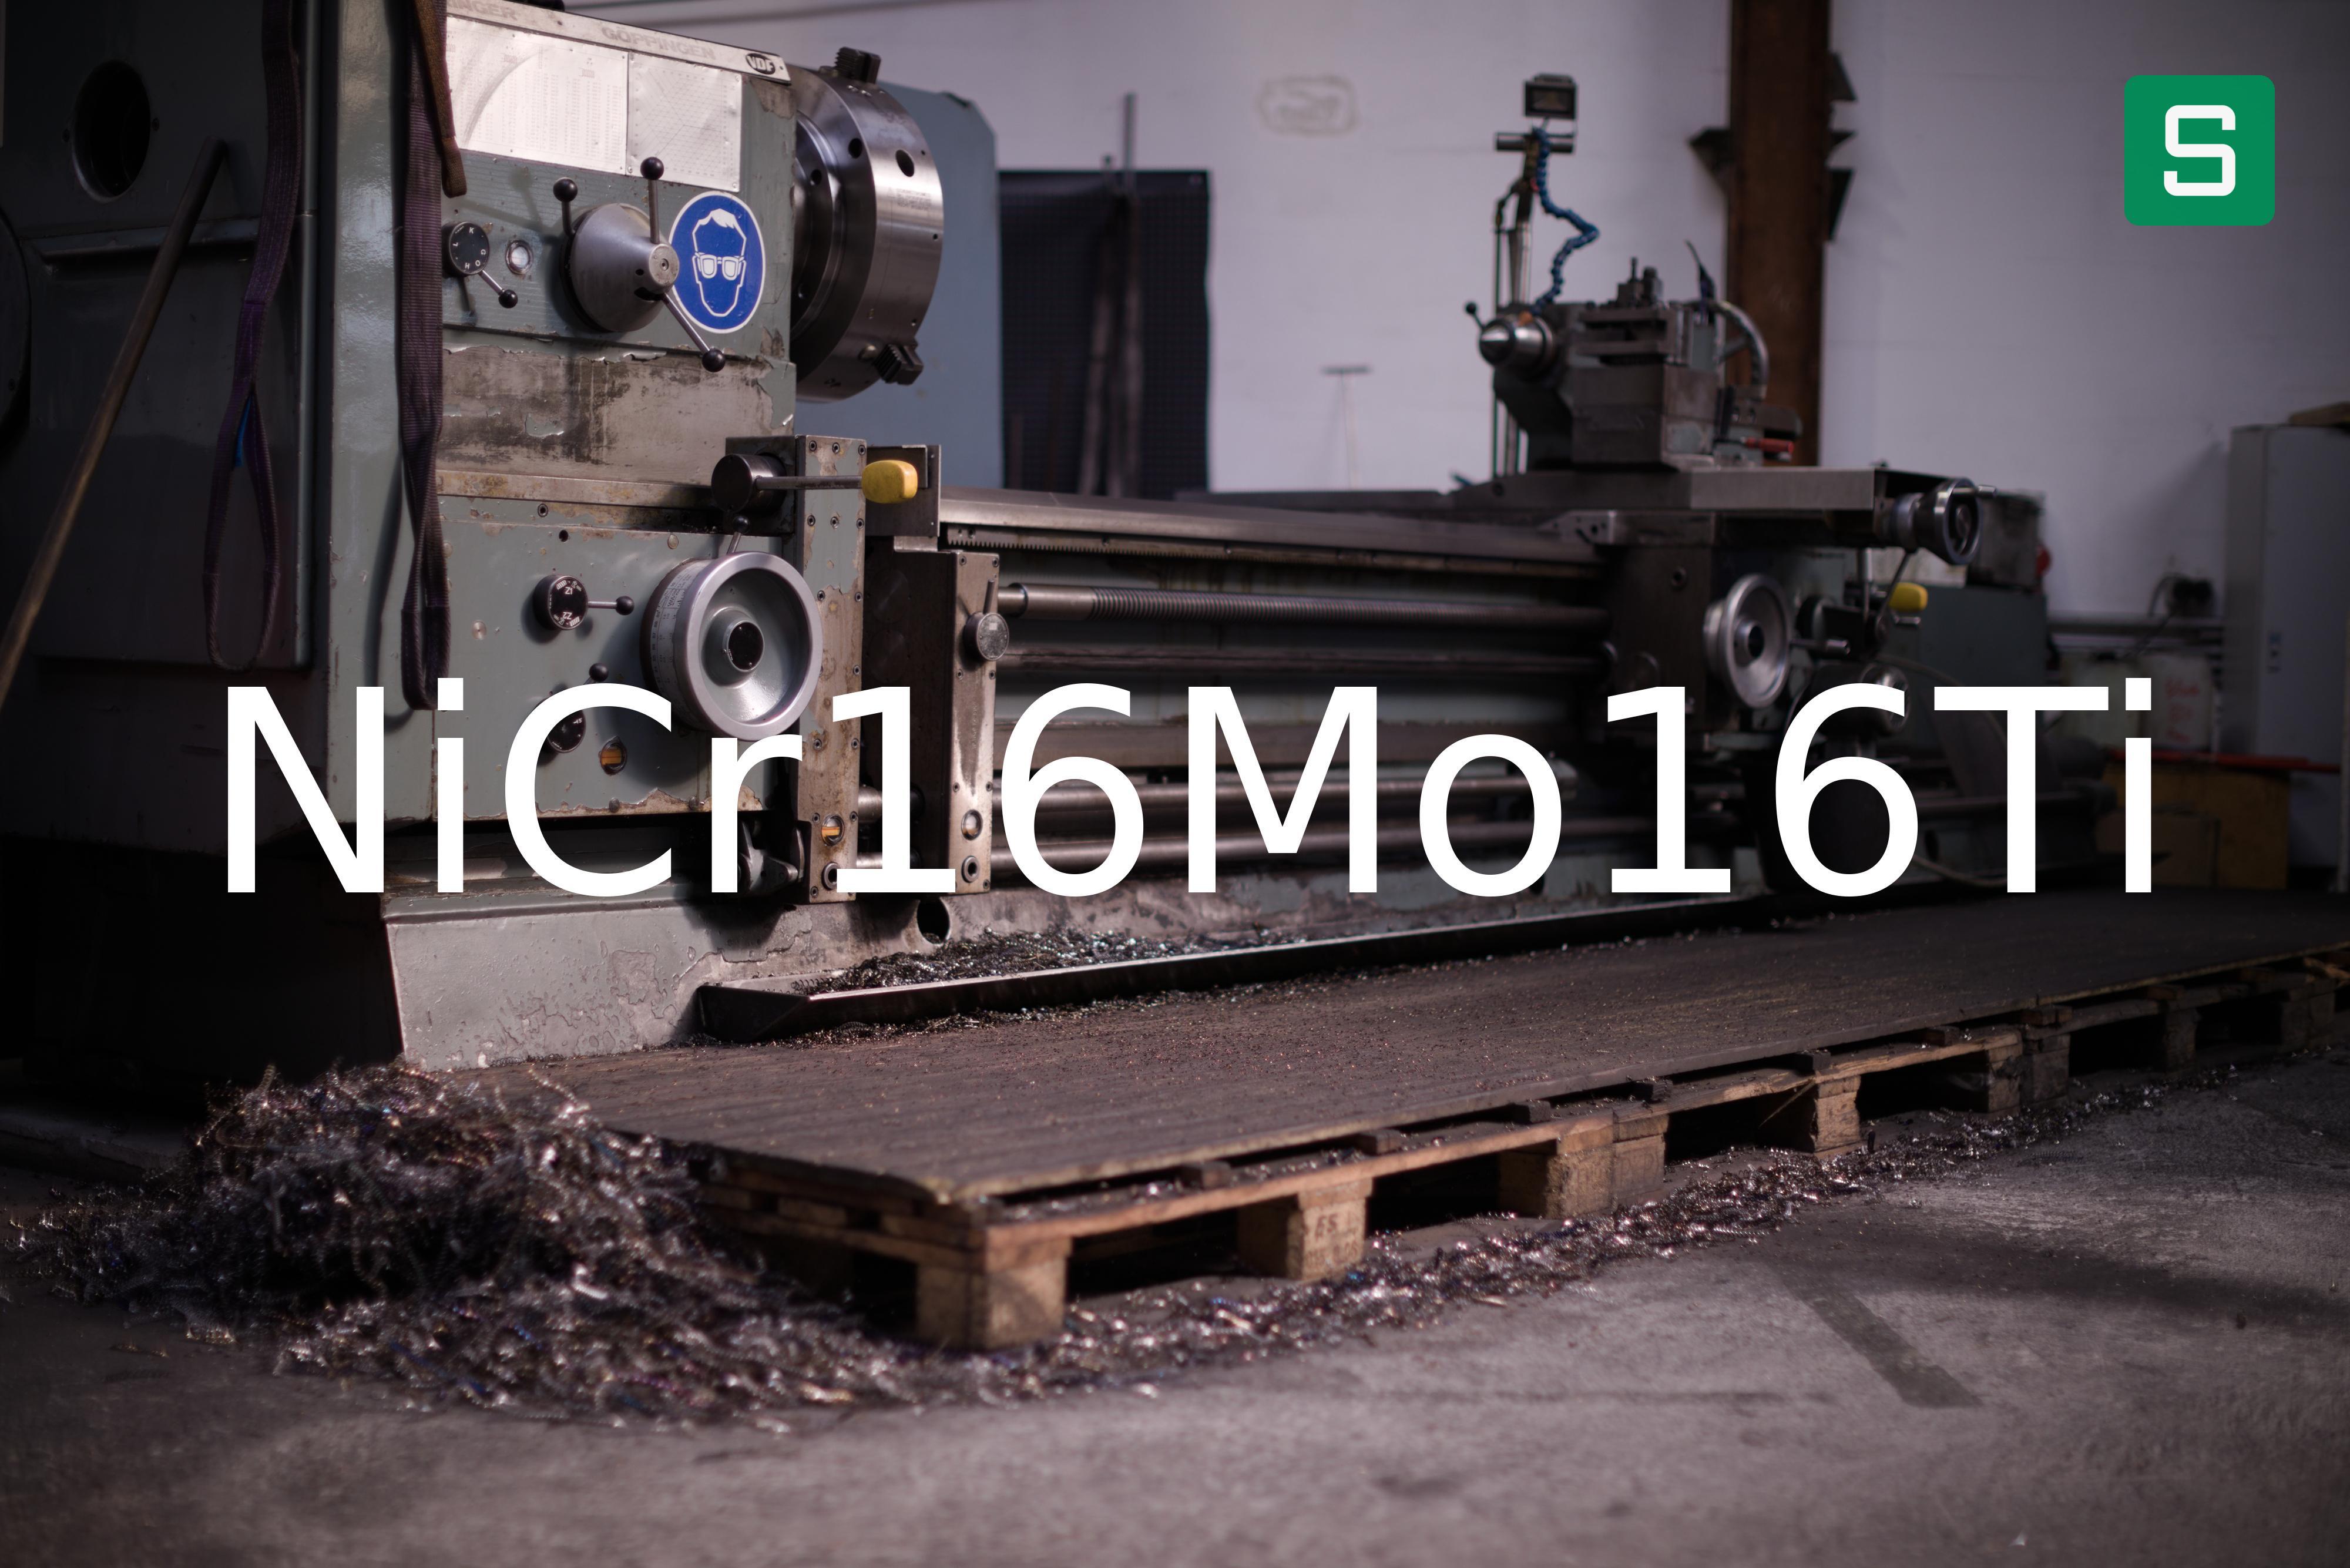 Steel Material: NiCr16Mo16Ti